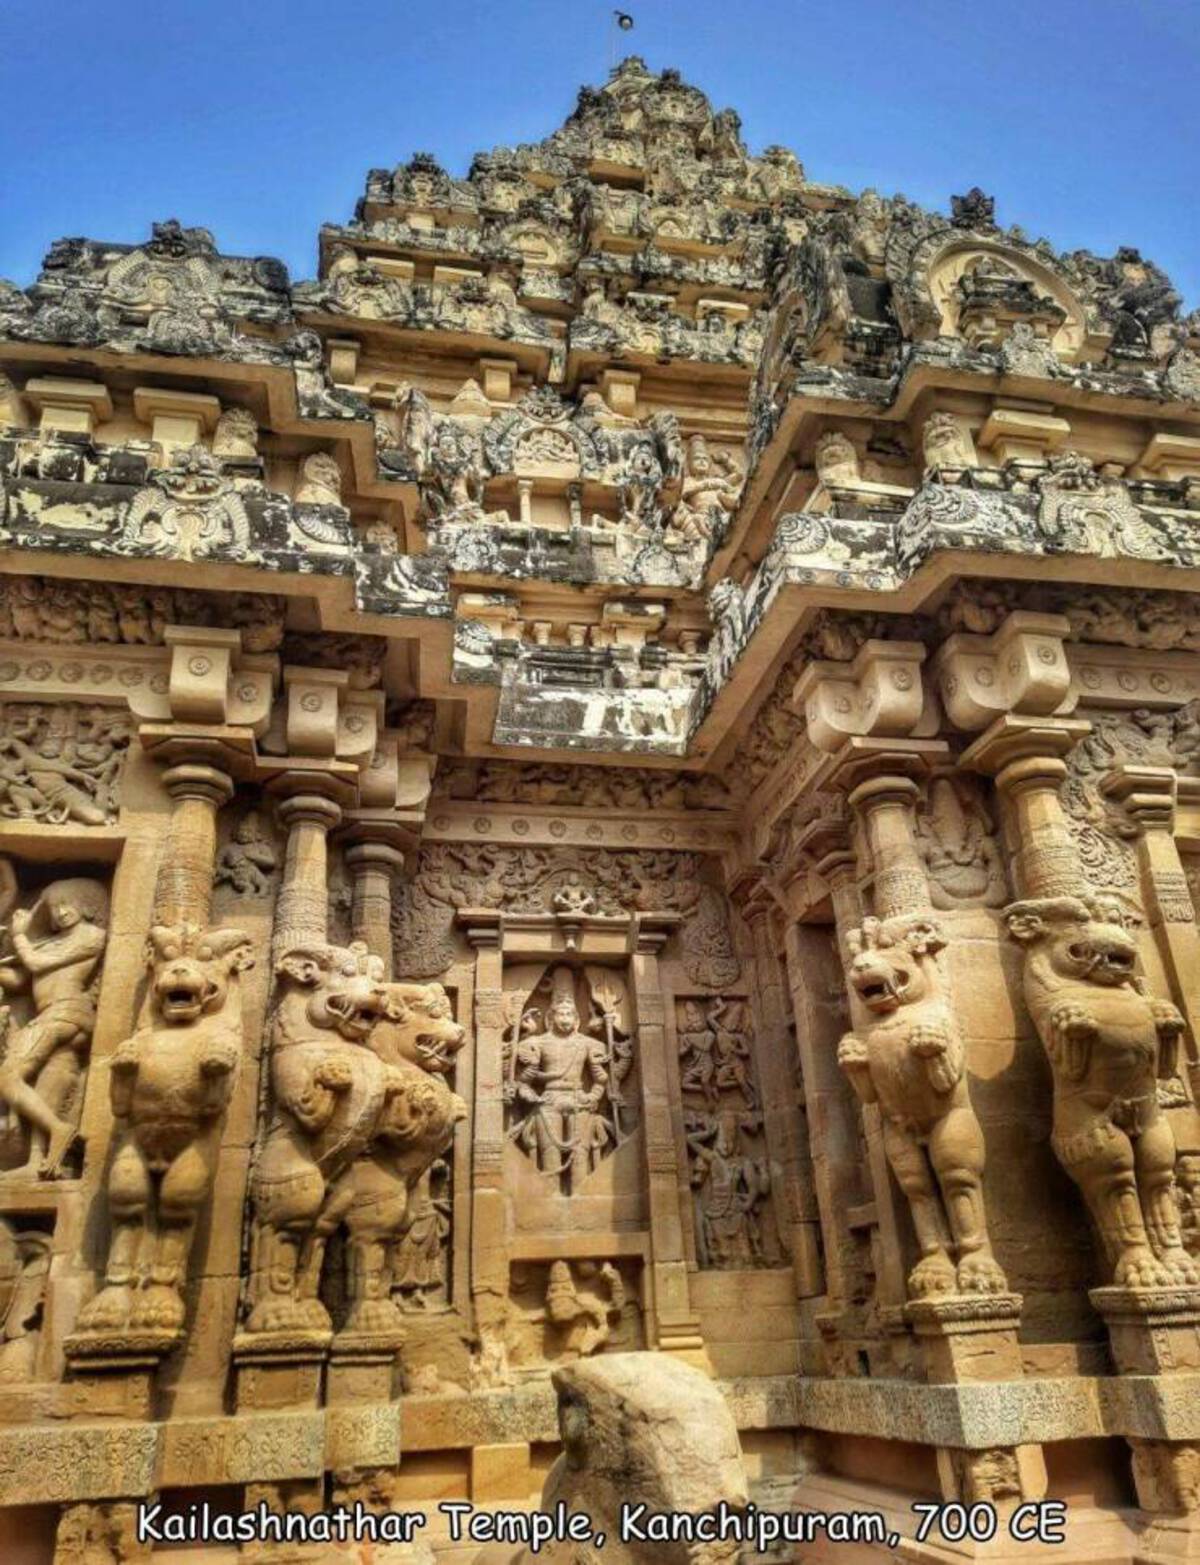 stone carving - Kailashnathar Temple, Kanchipuram, 700 Ce